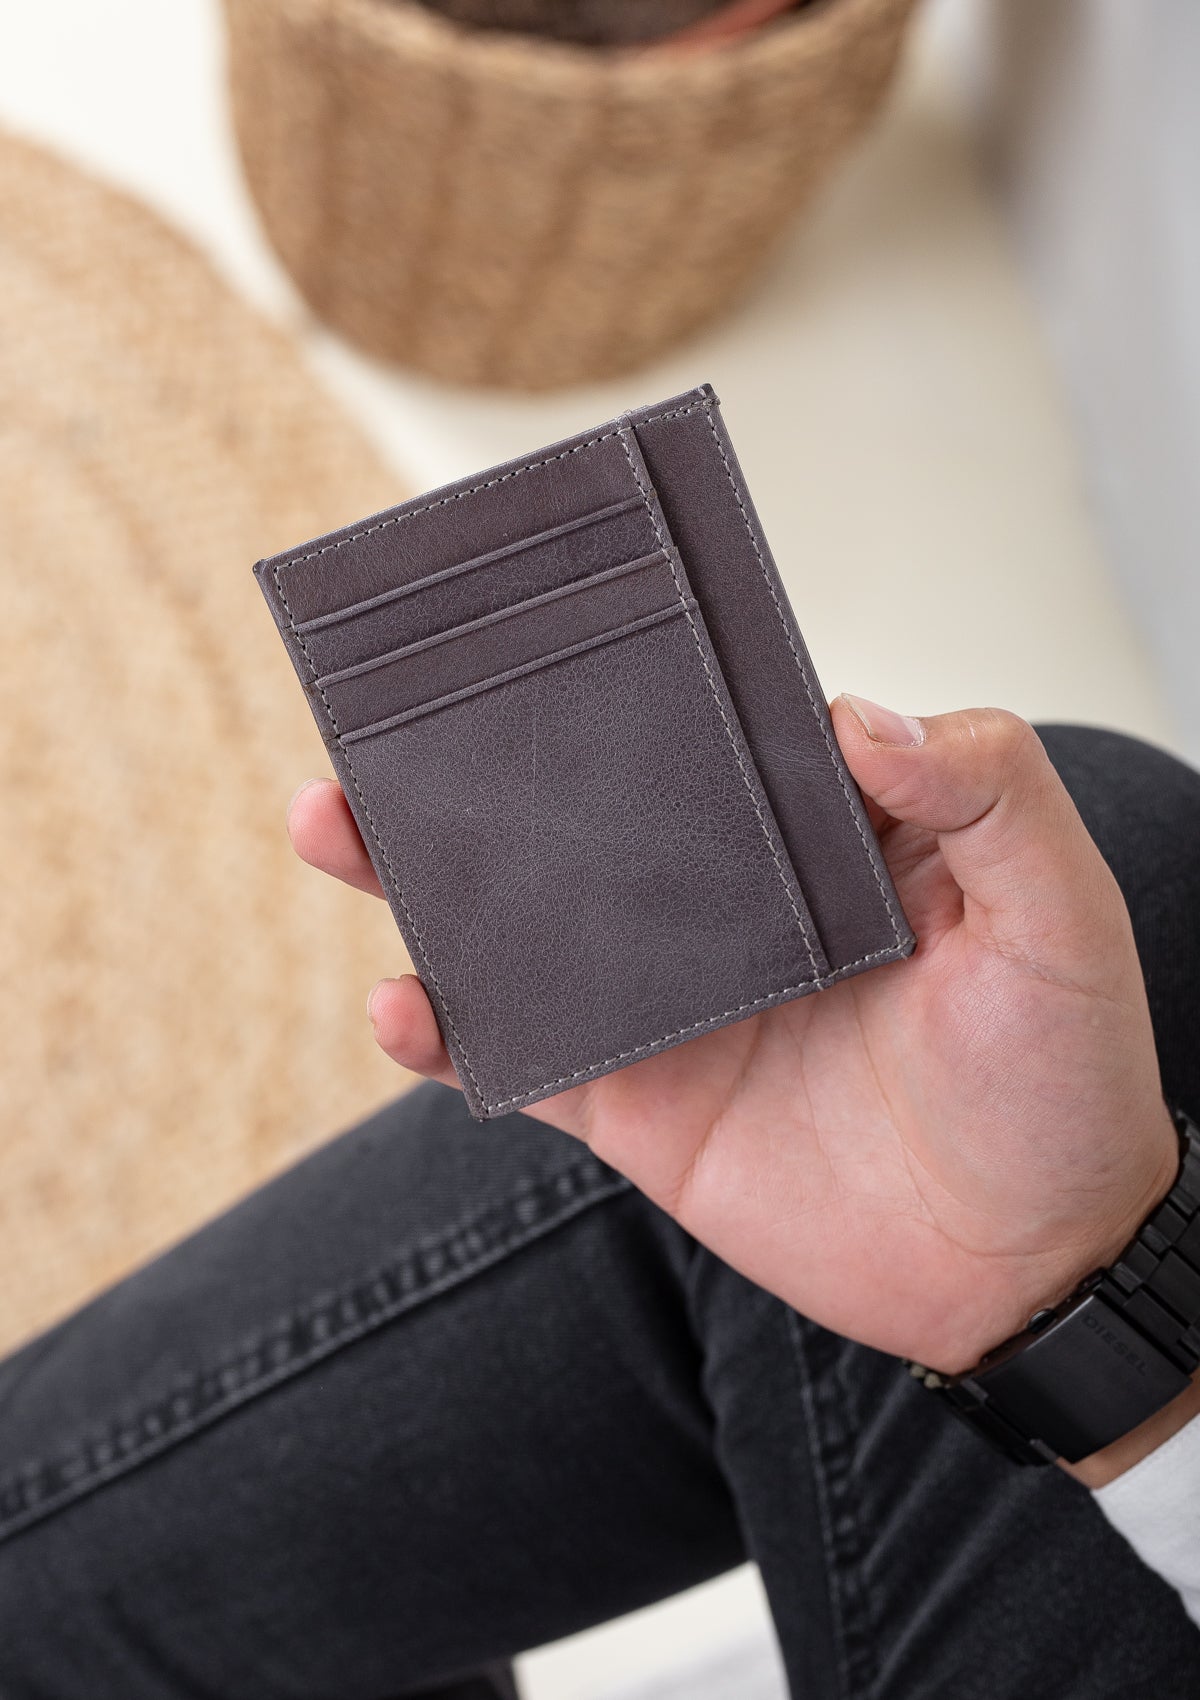 Cavu Vintage Leather Unisex Card Holder Wallet